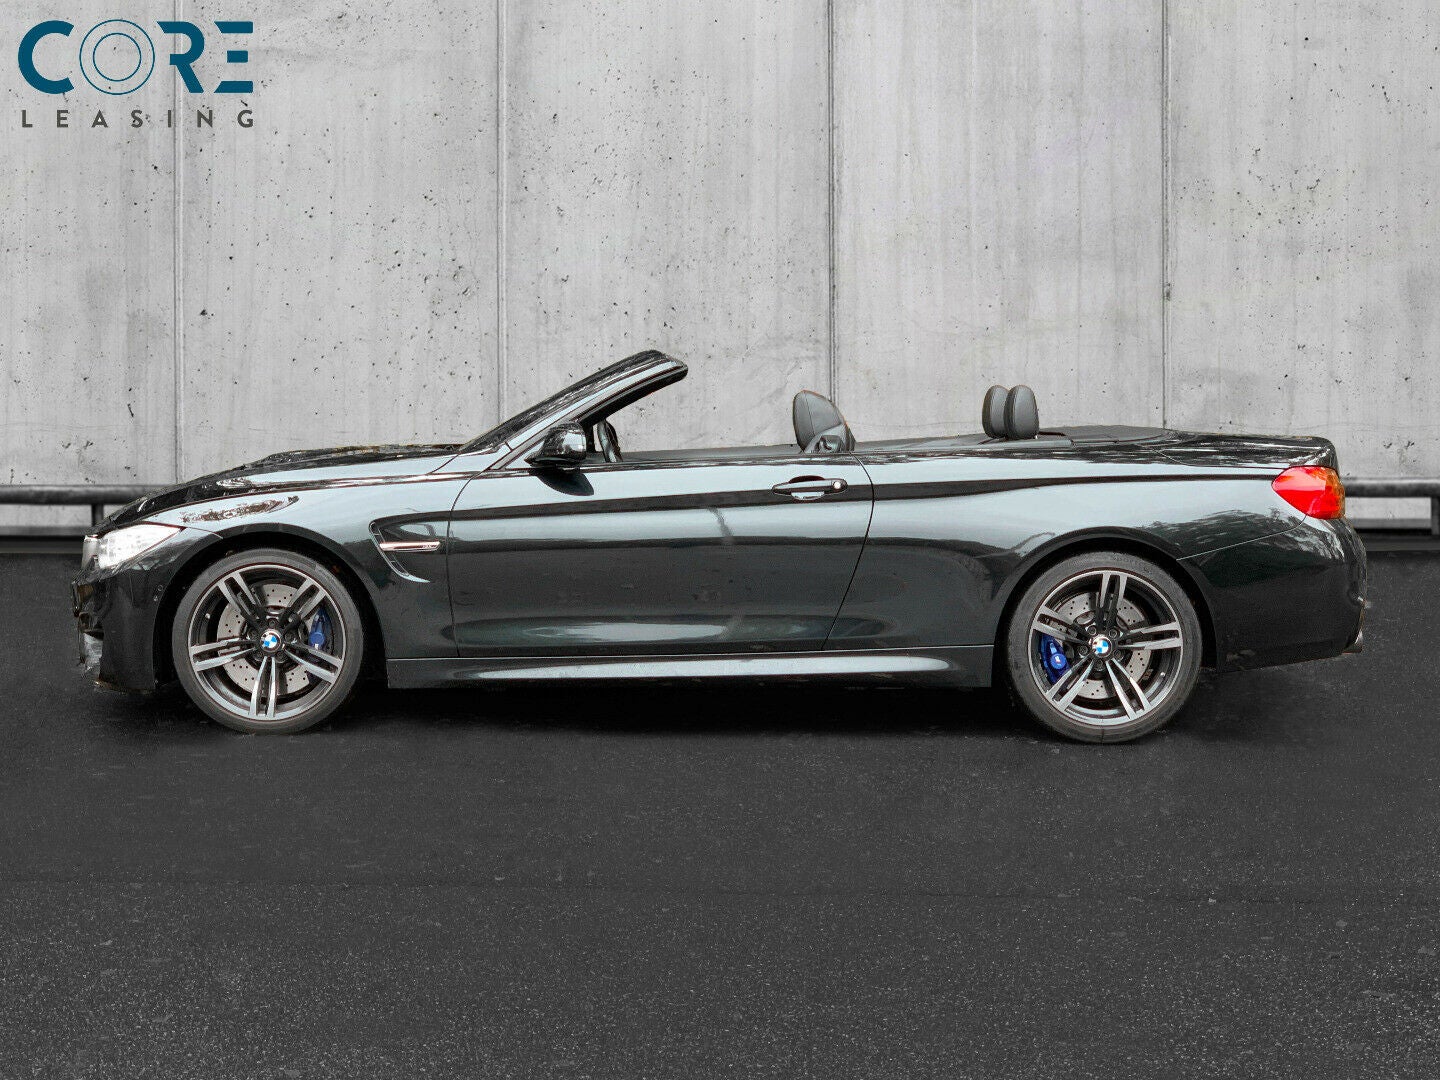 Sortmetal BMW M4 Cabriolet aut. fra 2016 parkeret foran en betonmur. CORE Leasing A/S er eksperter i BMW leasing.